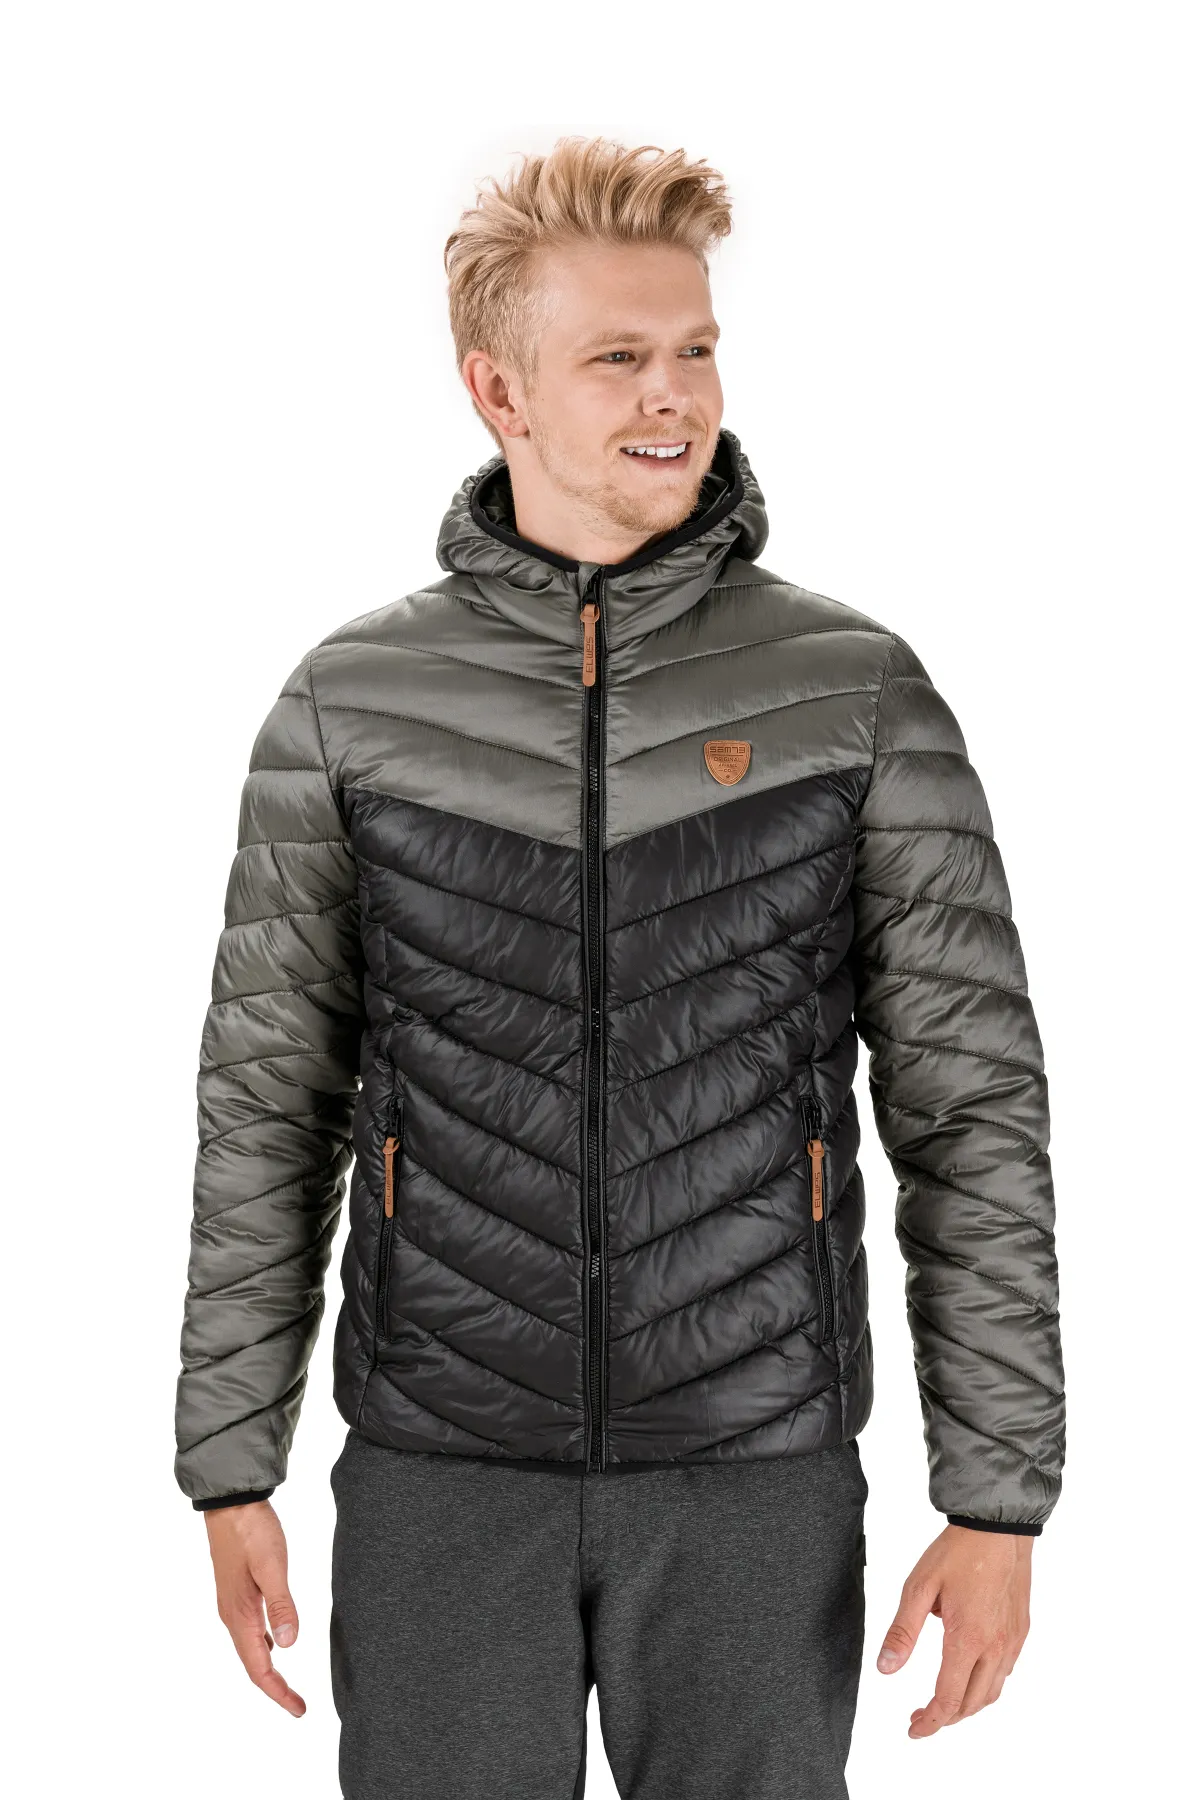 Men's jacket SAM73 Outdoor